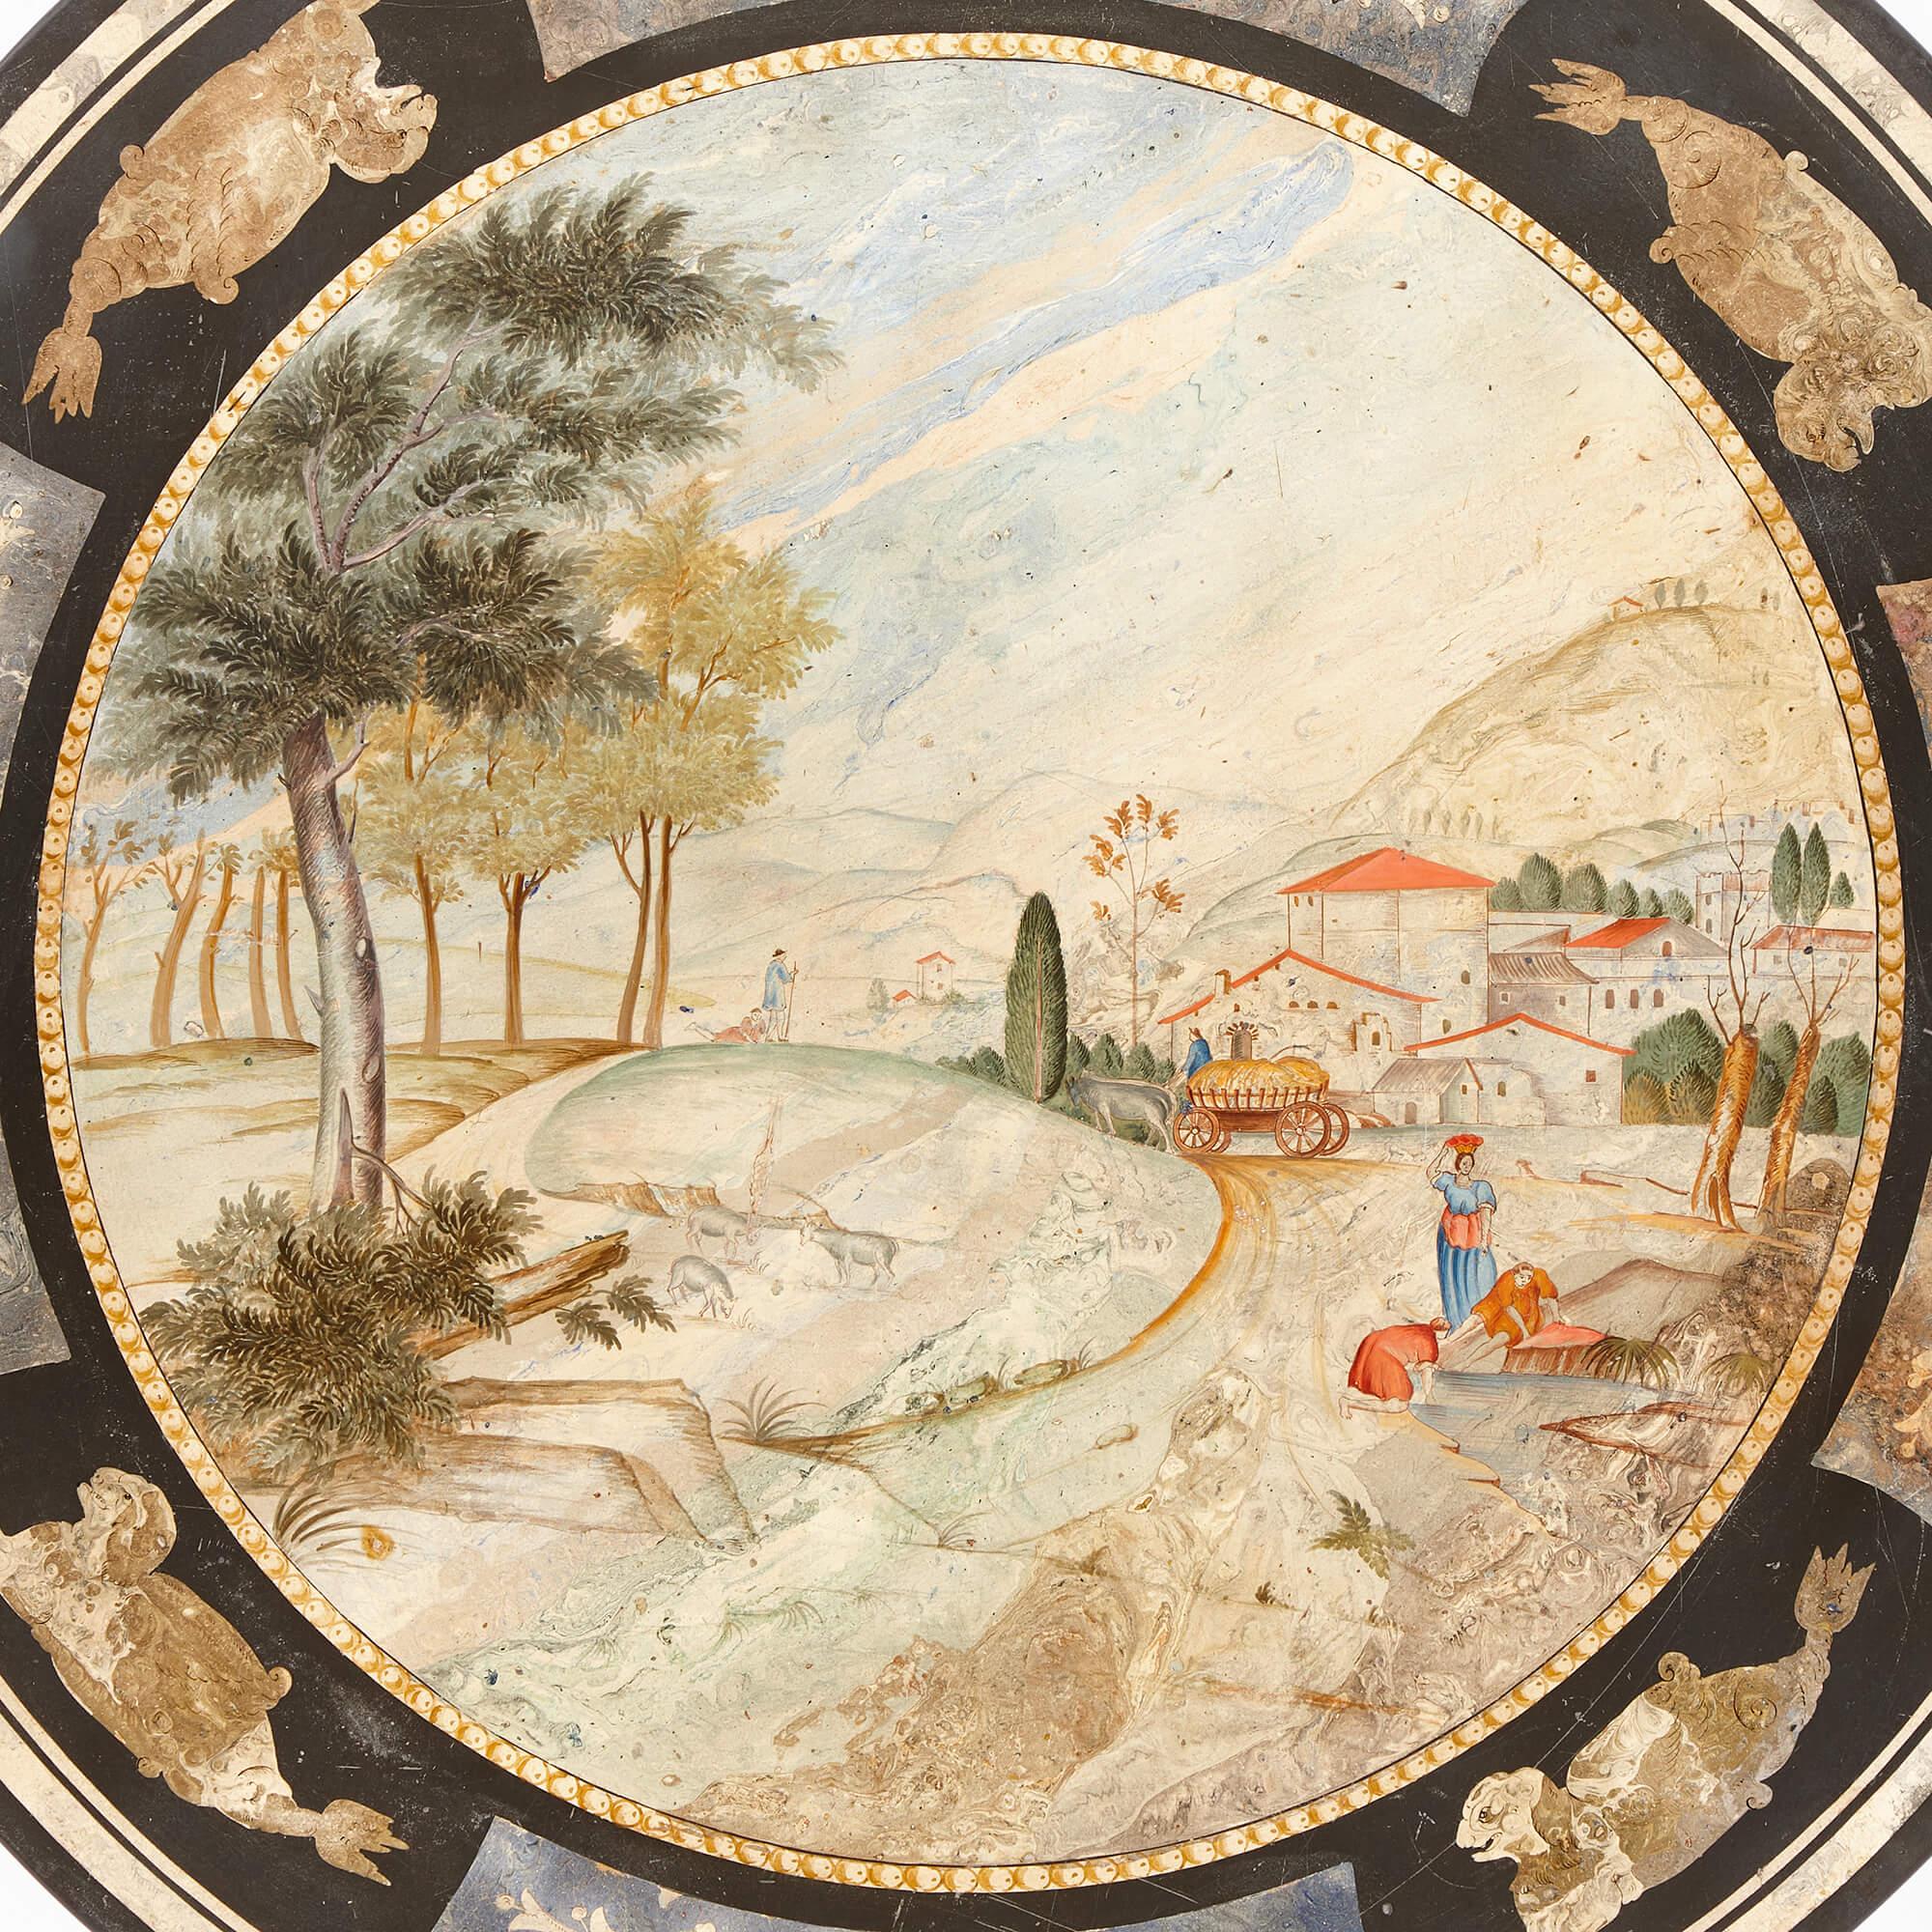 Un plateau de table circulaire italien ancien en scagliola 
Italien, 19e siècle
Hauteur 1,5 cm, diamètre 90 cm

Ce plateau circulaire délicatement détaillé est réalisé en scagliola, un matériau populaire (une variante du plâtre) souvent utilisé